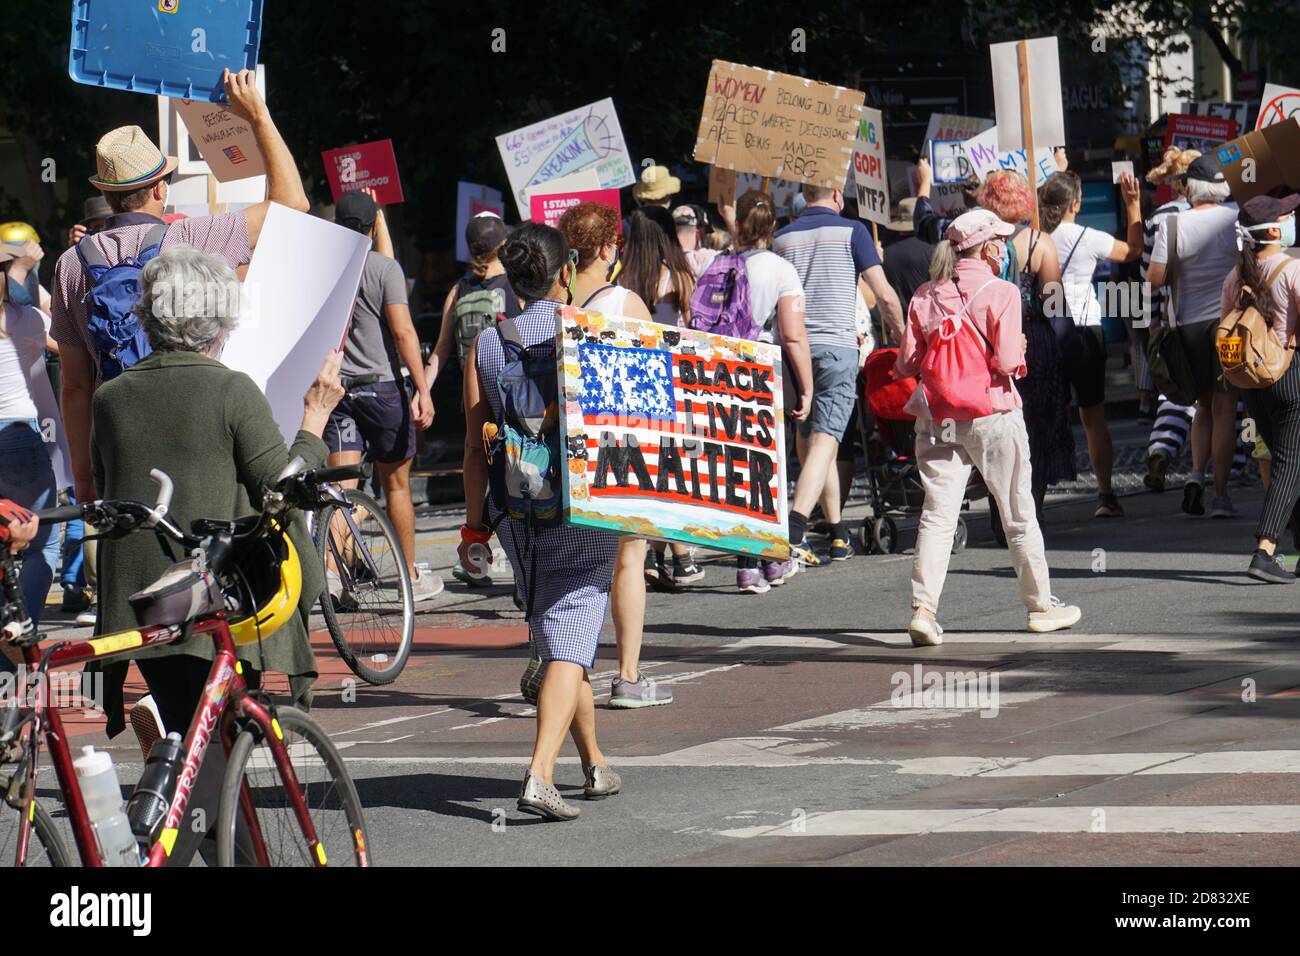 17 octobre 2020. La marche des femmes de San Francisco avant l'élection présidentielle américaine. Des manifestants tiennent des panneaux. Banque D'Images